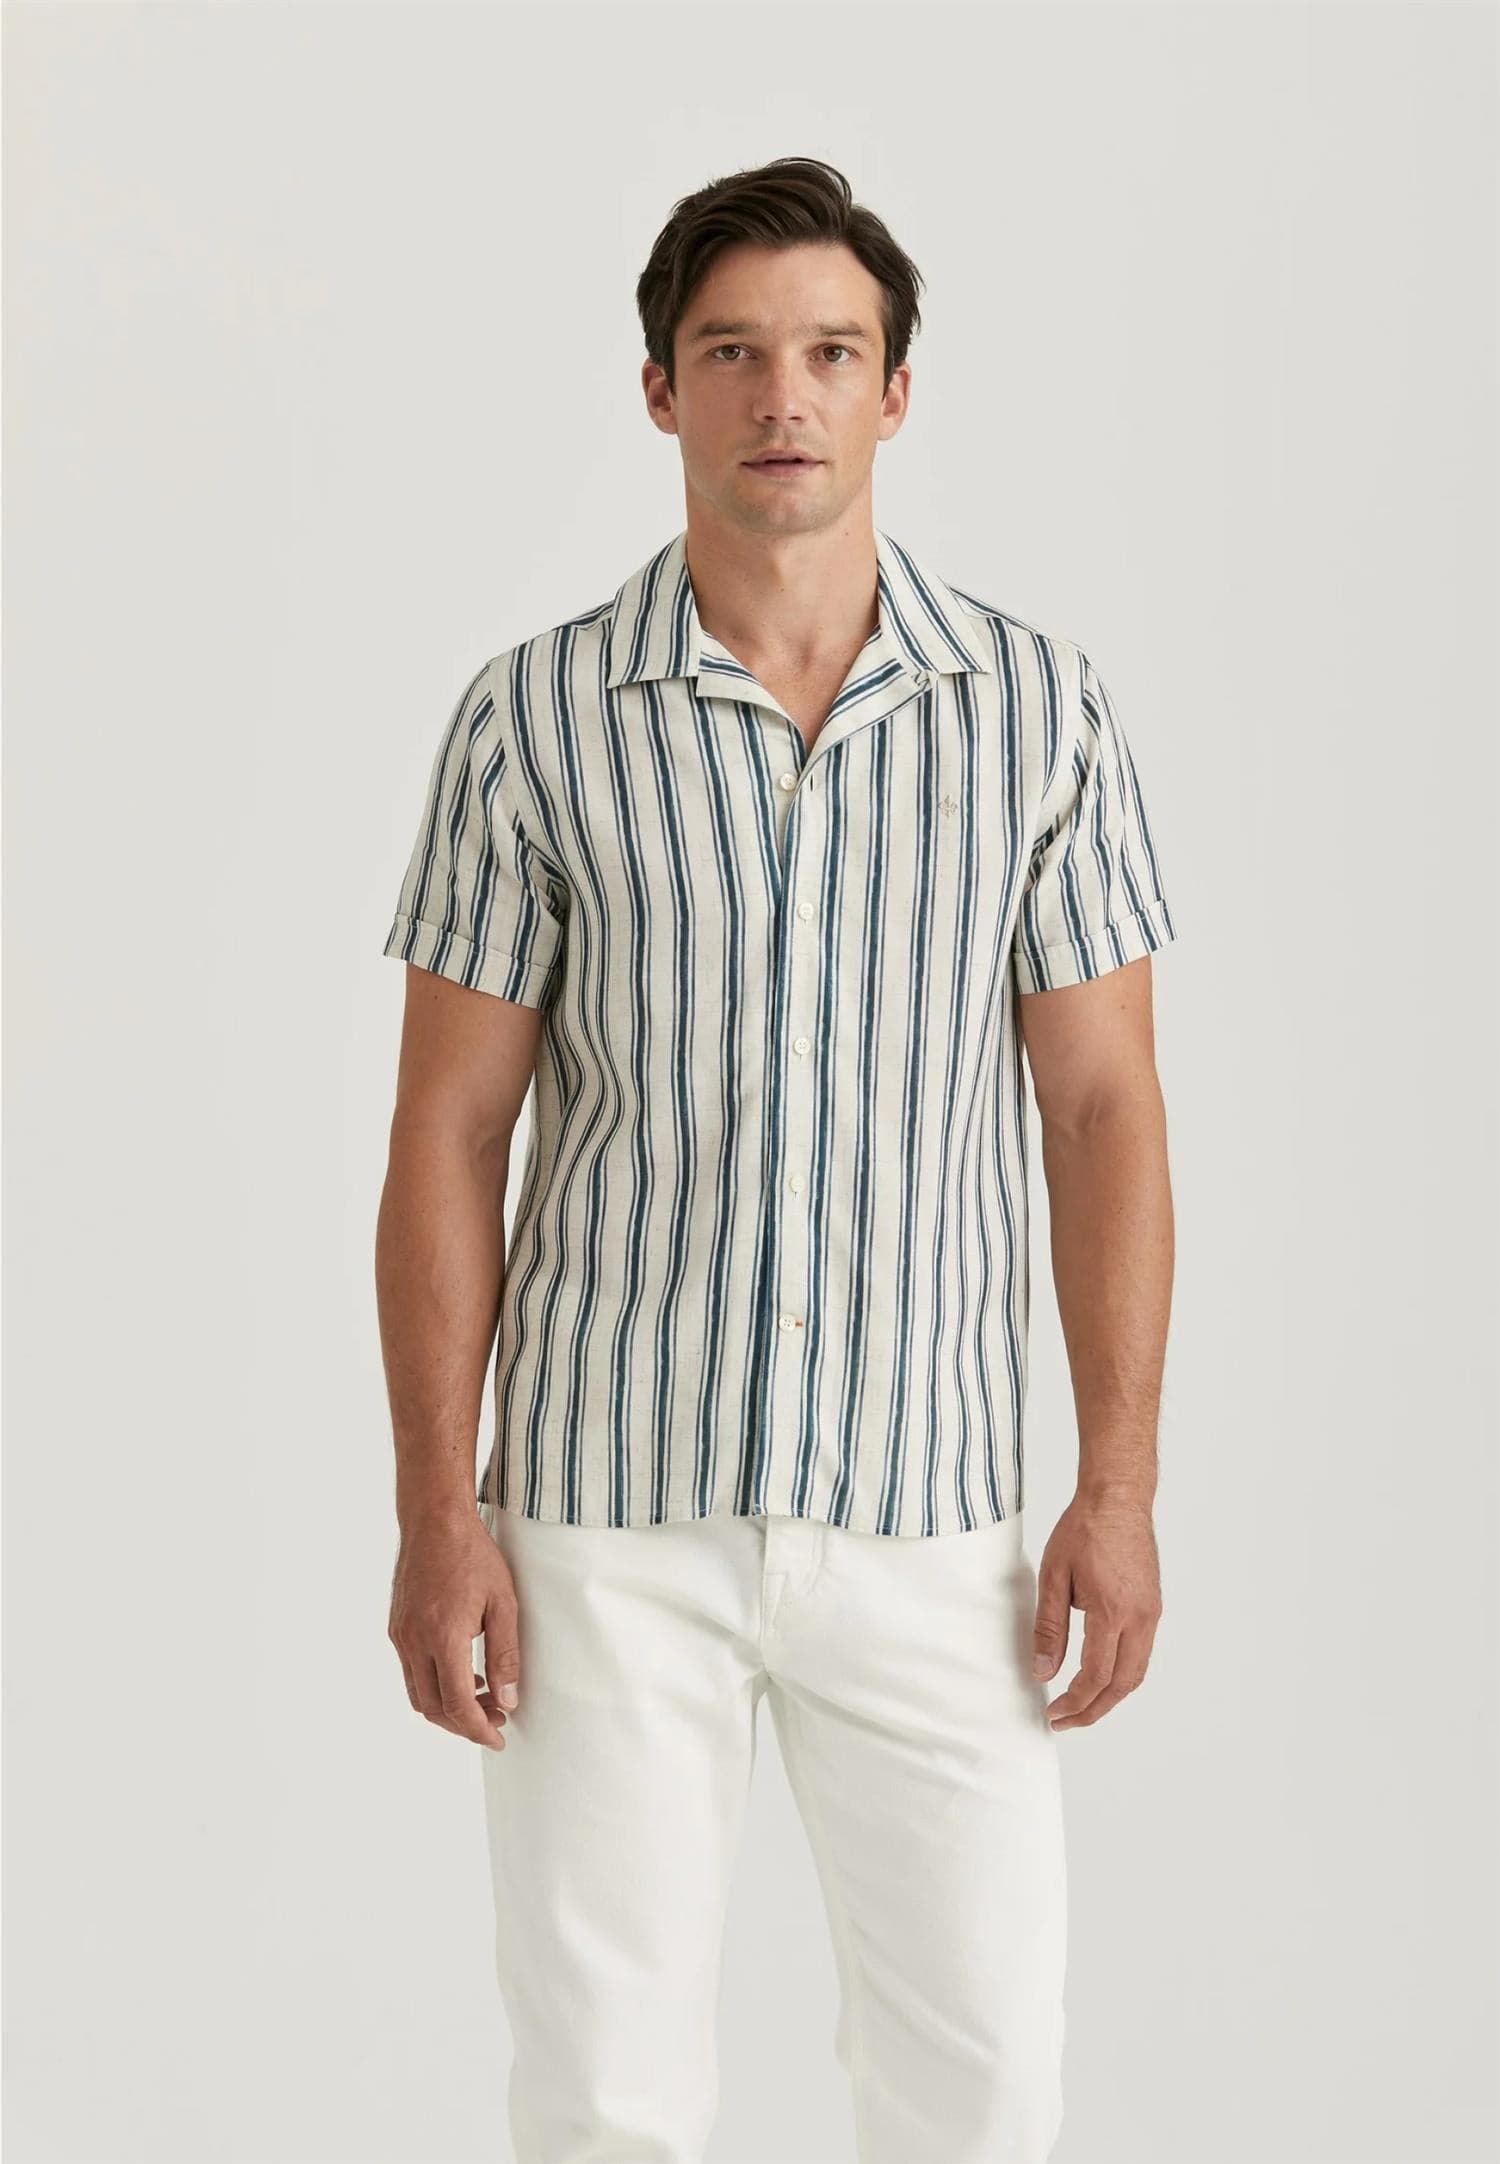 Bilde av Printed short sleeve shirt - Skjorte - Skjorte i Morris Stockholm